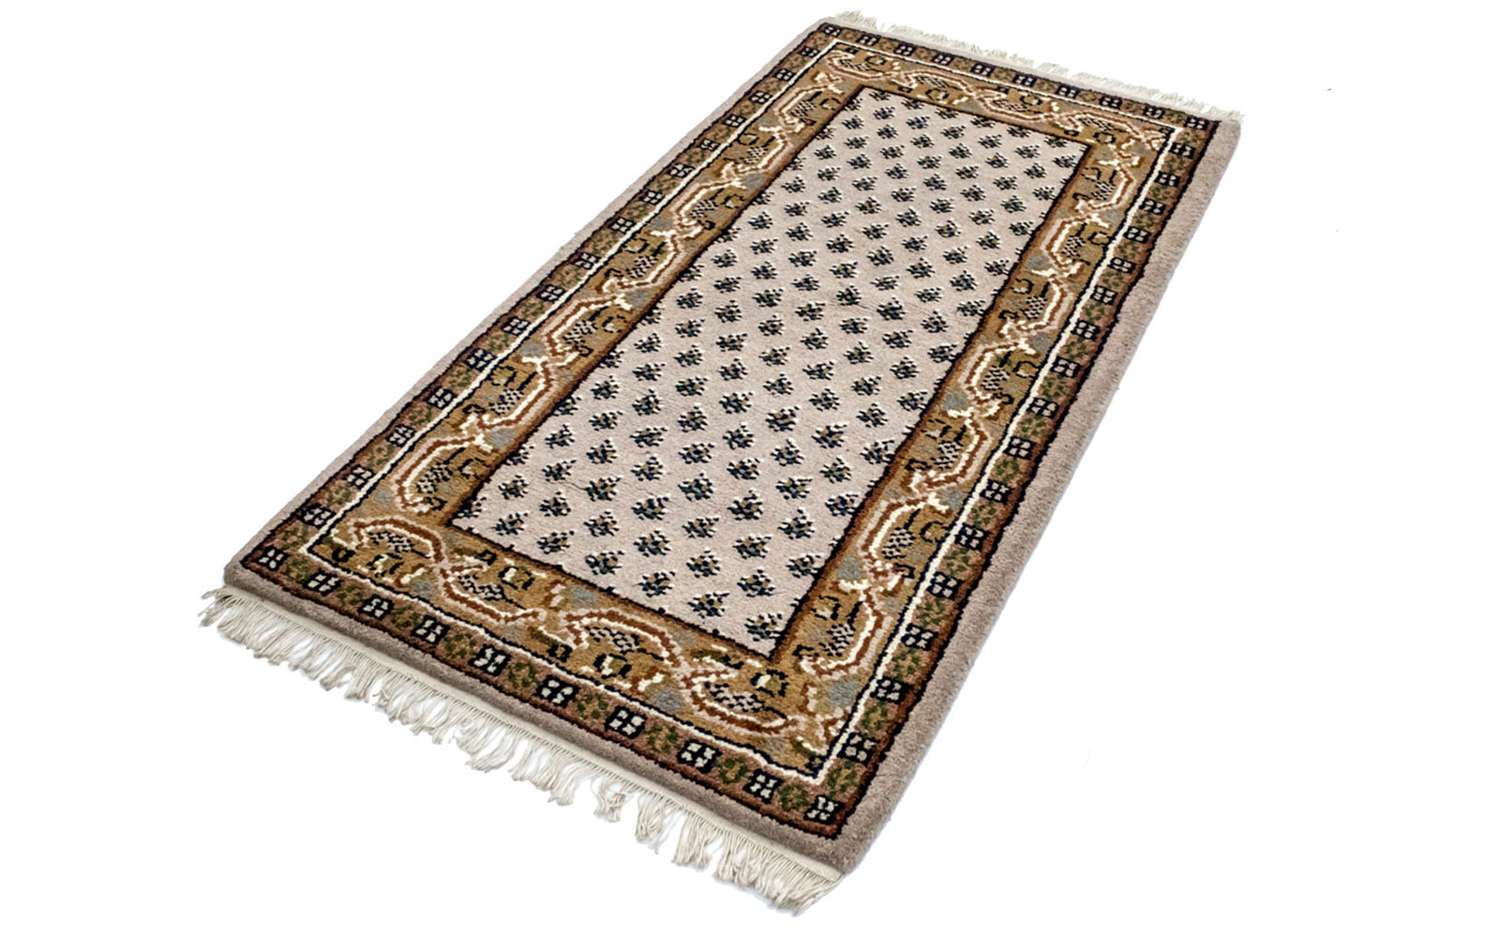 Orientalsk teppe - 160 x 90 cm - beige